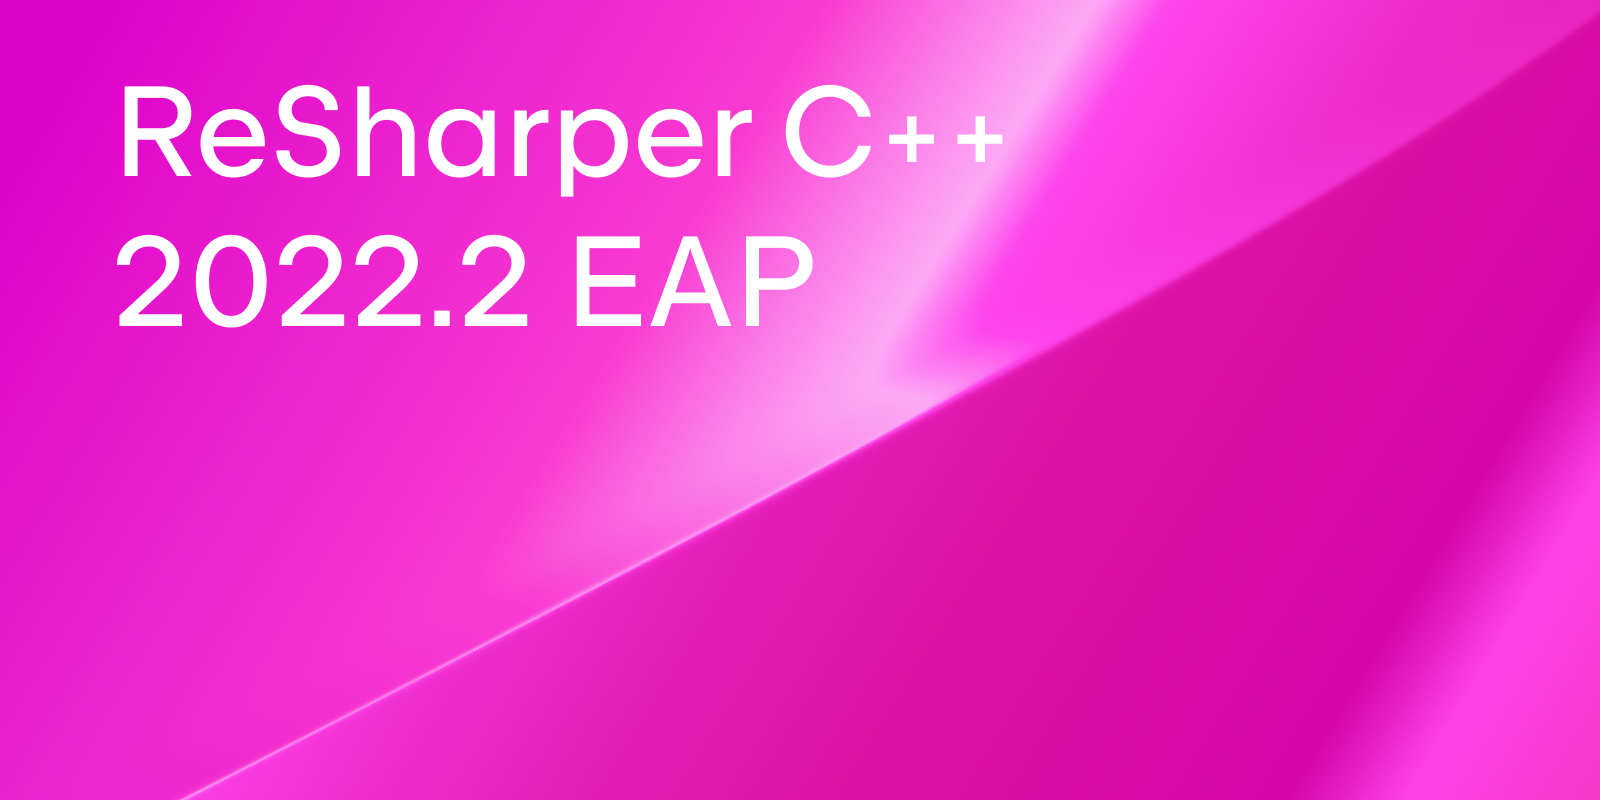 ReSharper C++ 2022.2 EAP